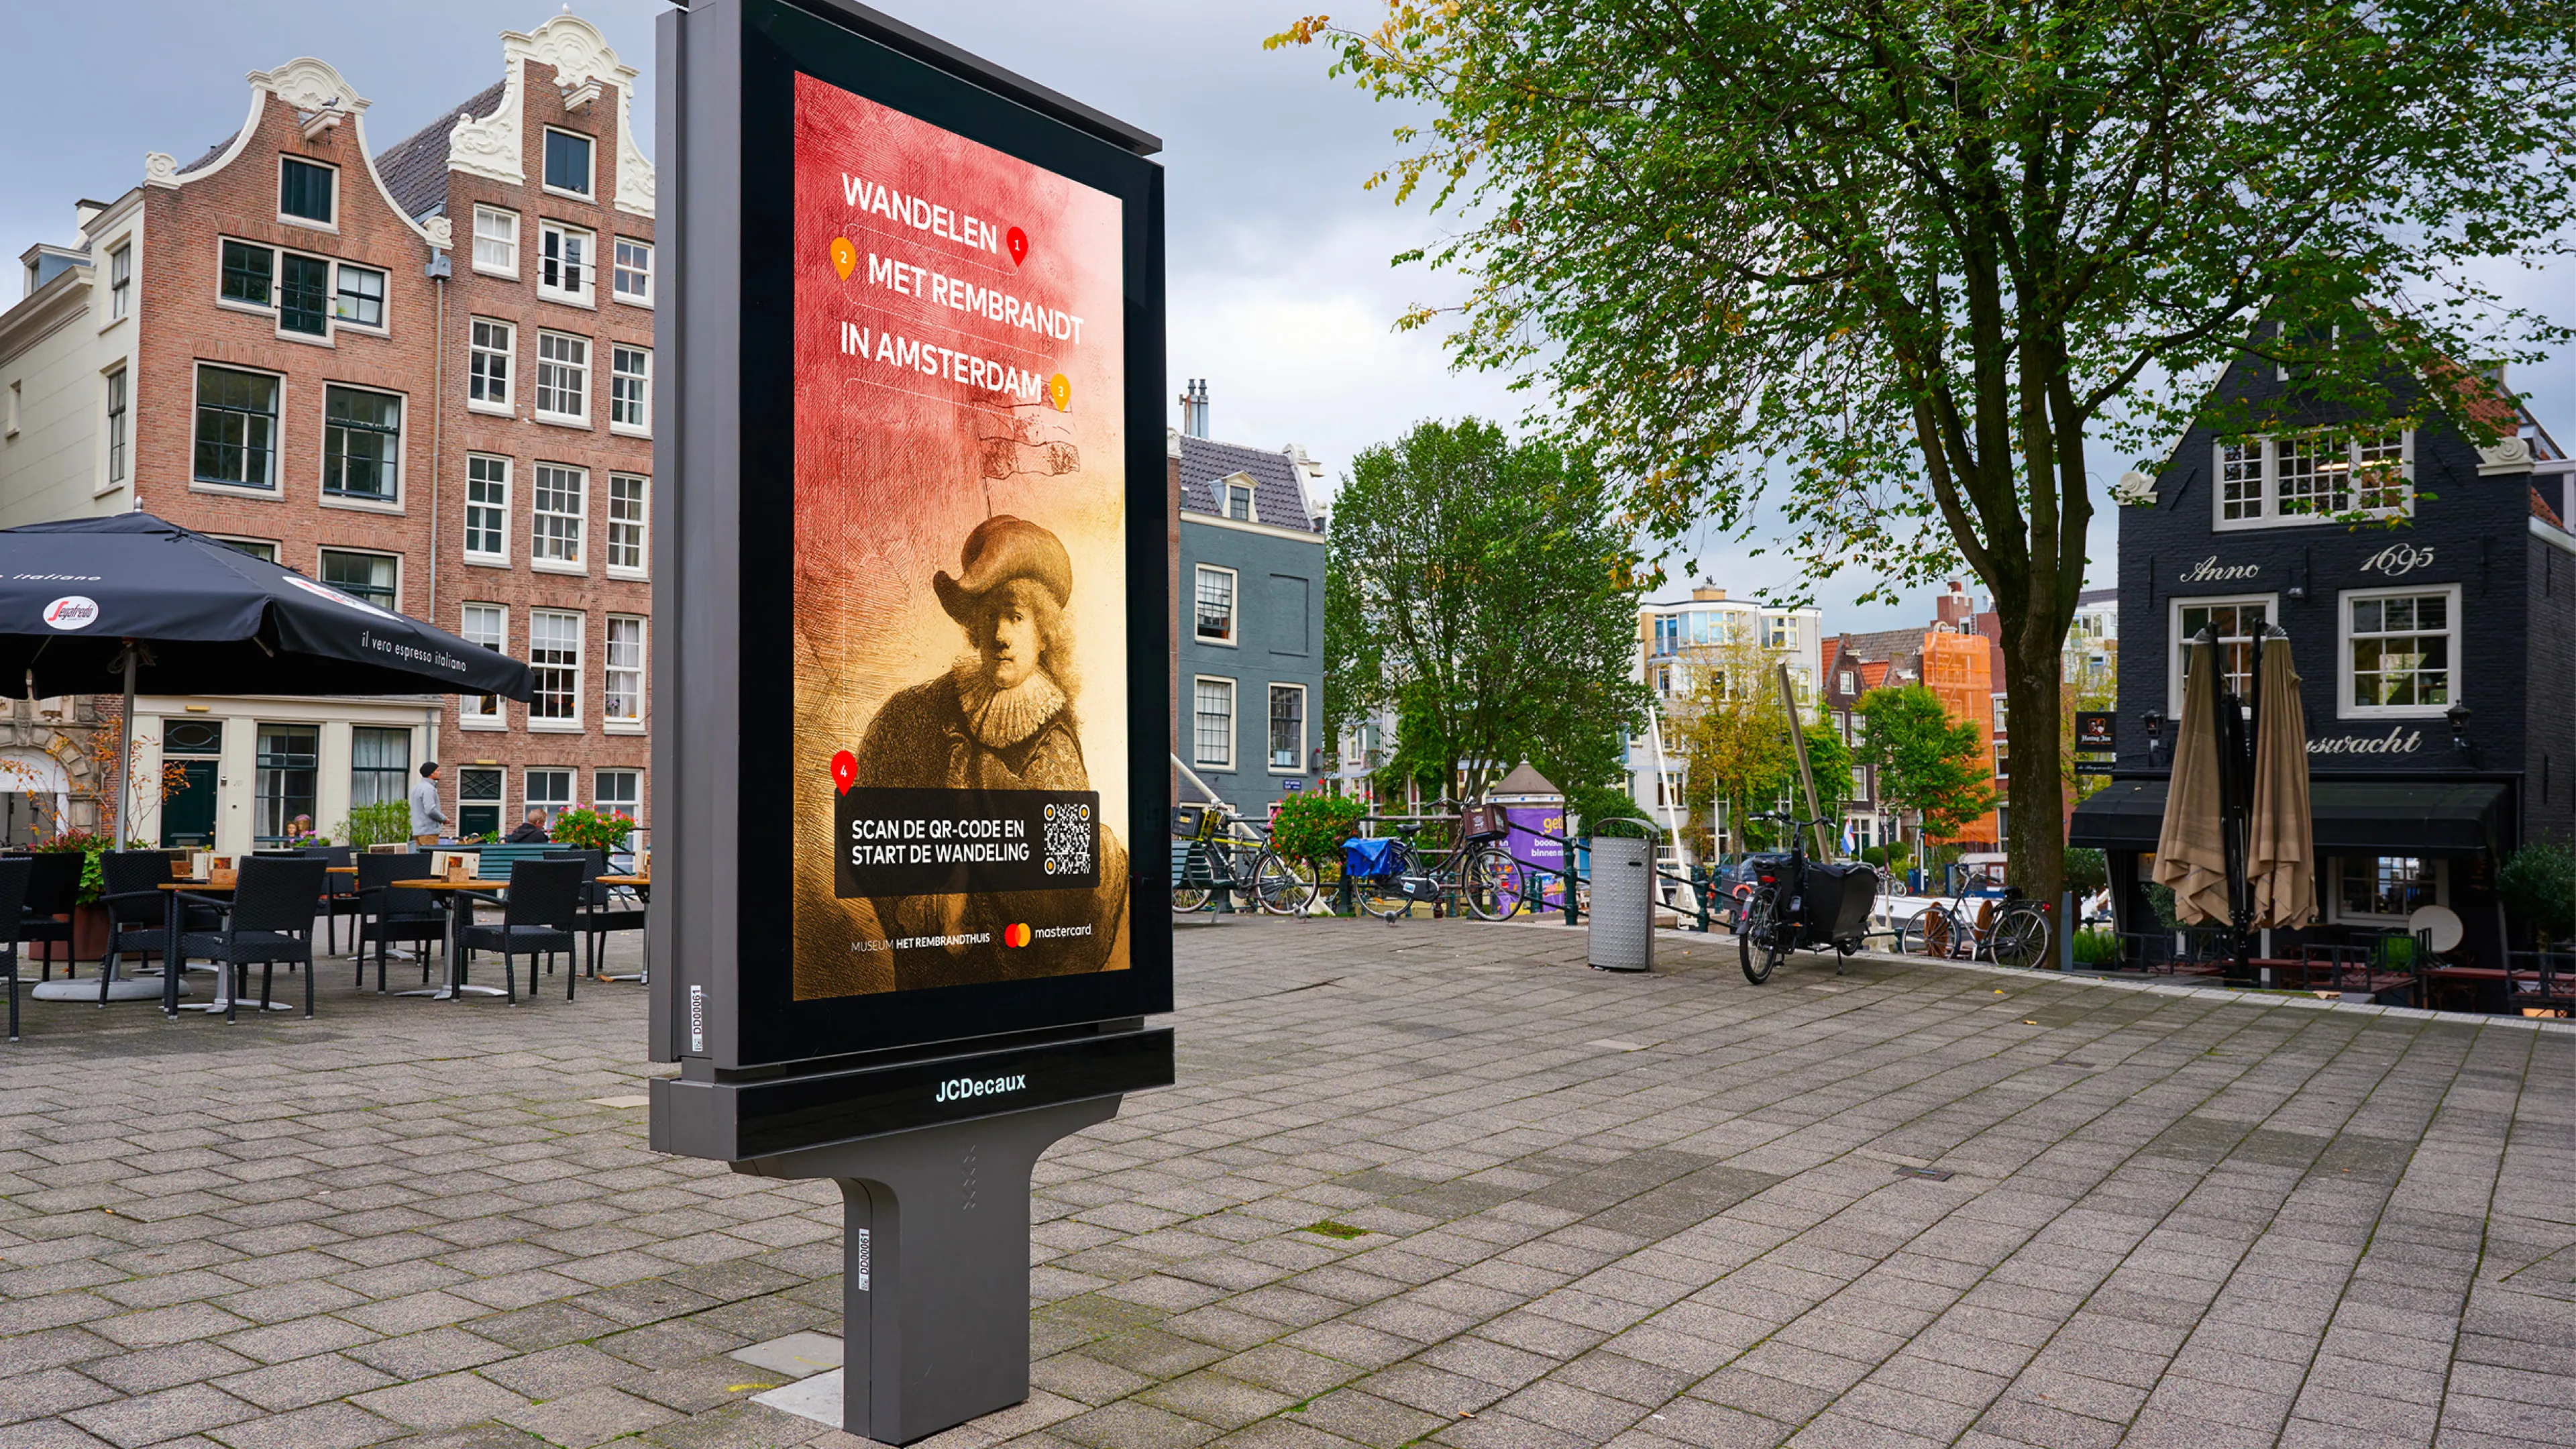 Wandelen met Rembrandt in Amsterdam.